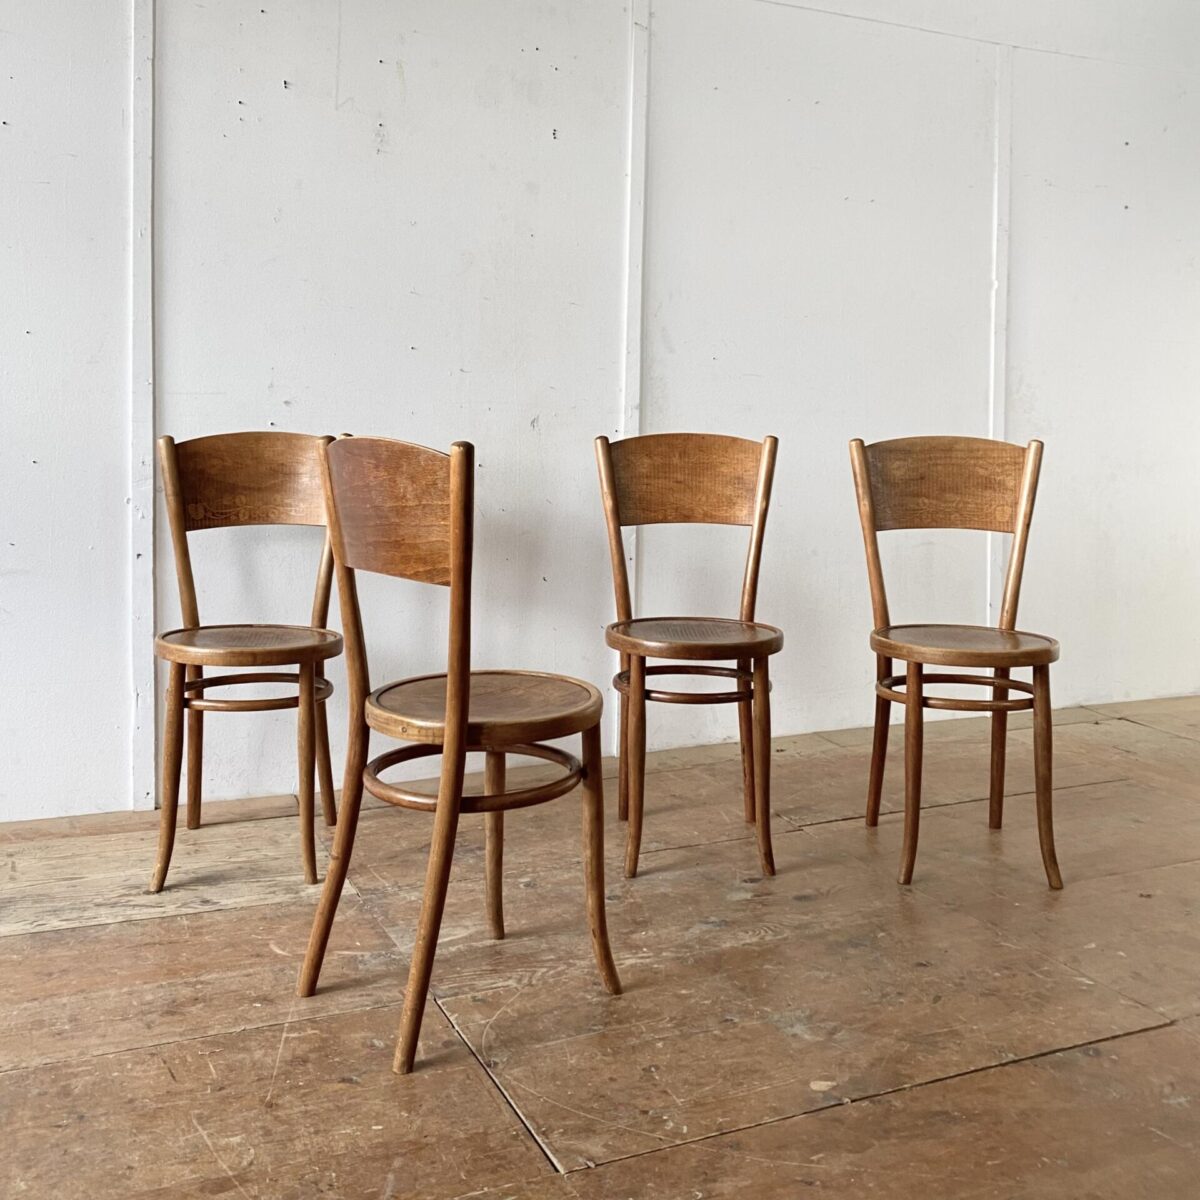 Deuxieme.shop Bugholzstühle Esszimmer Stühle Thonet. 4er Set Bistrostühle aus Fribourg, mit Blumenmuster. Preis fürs Set. Die Stühle sind in gutem stabilen Zustand, bei zwei Stühlen sind die Hinterbeine durchgehend verschraubt. 